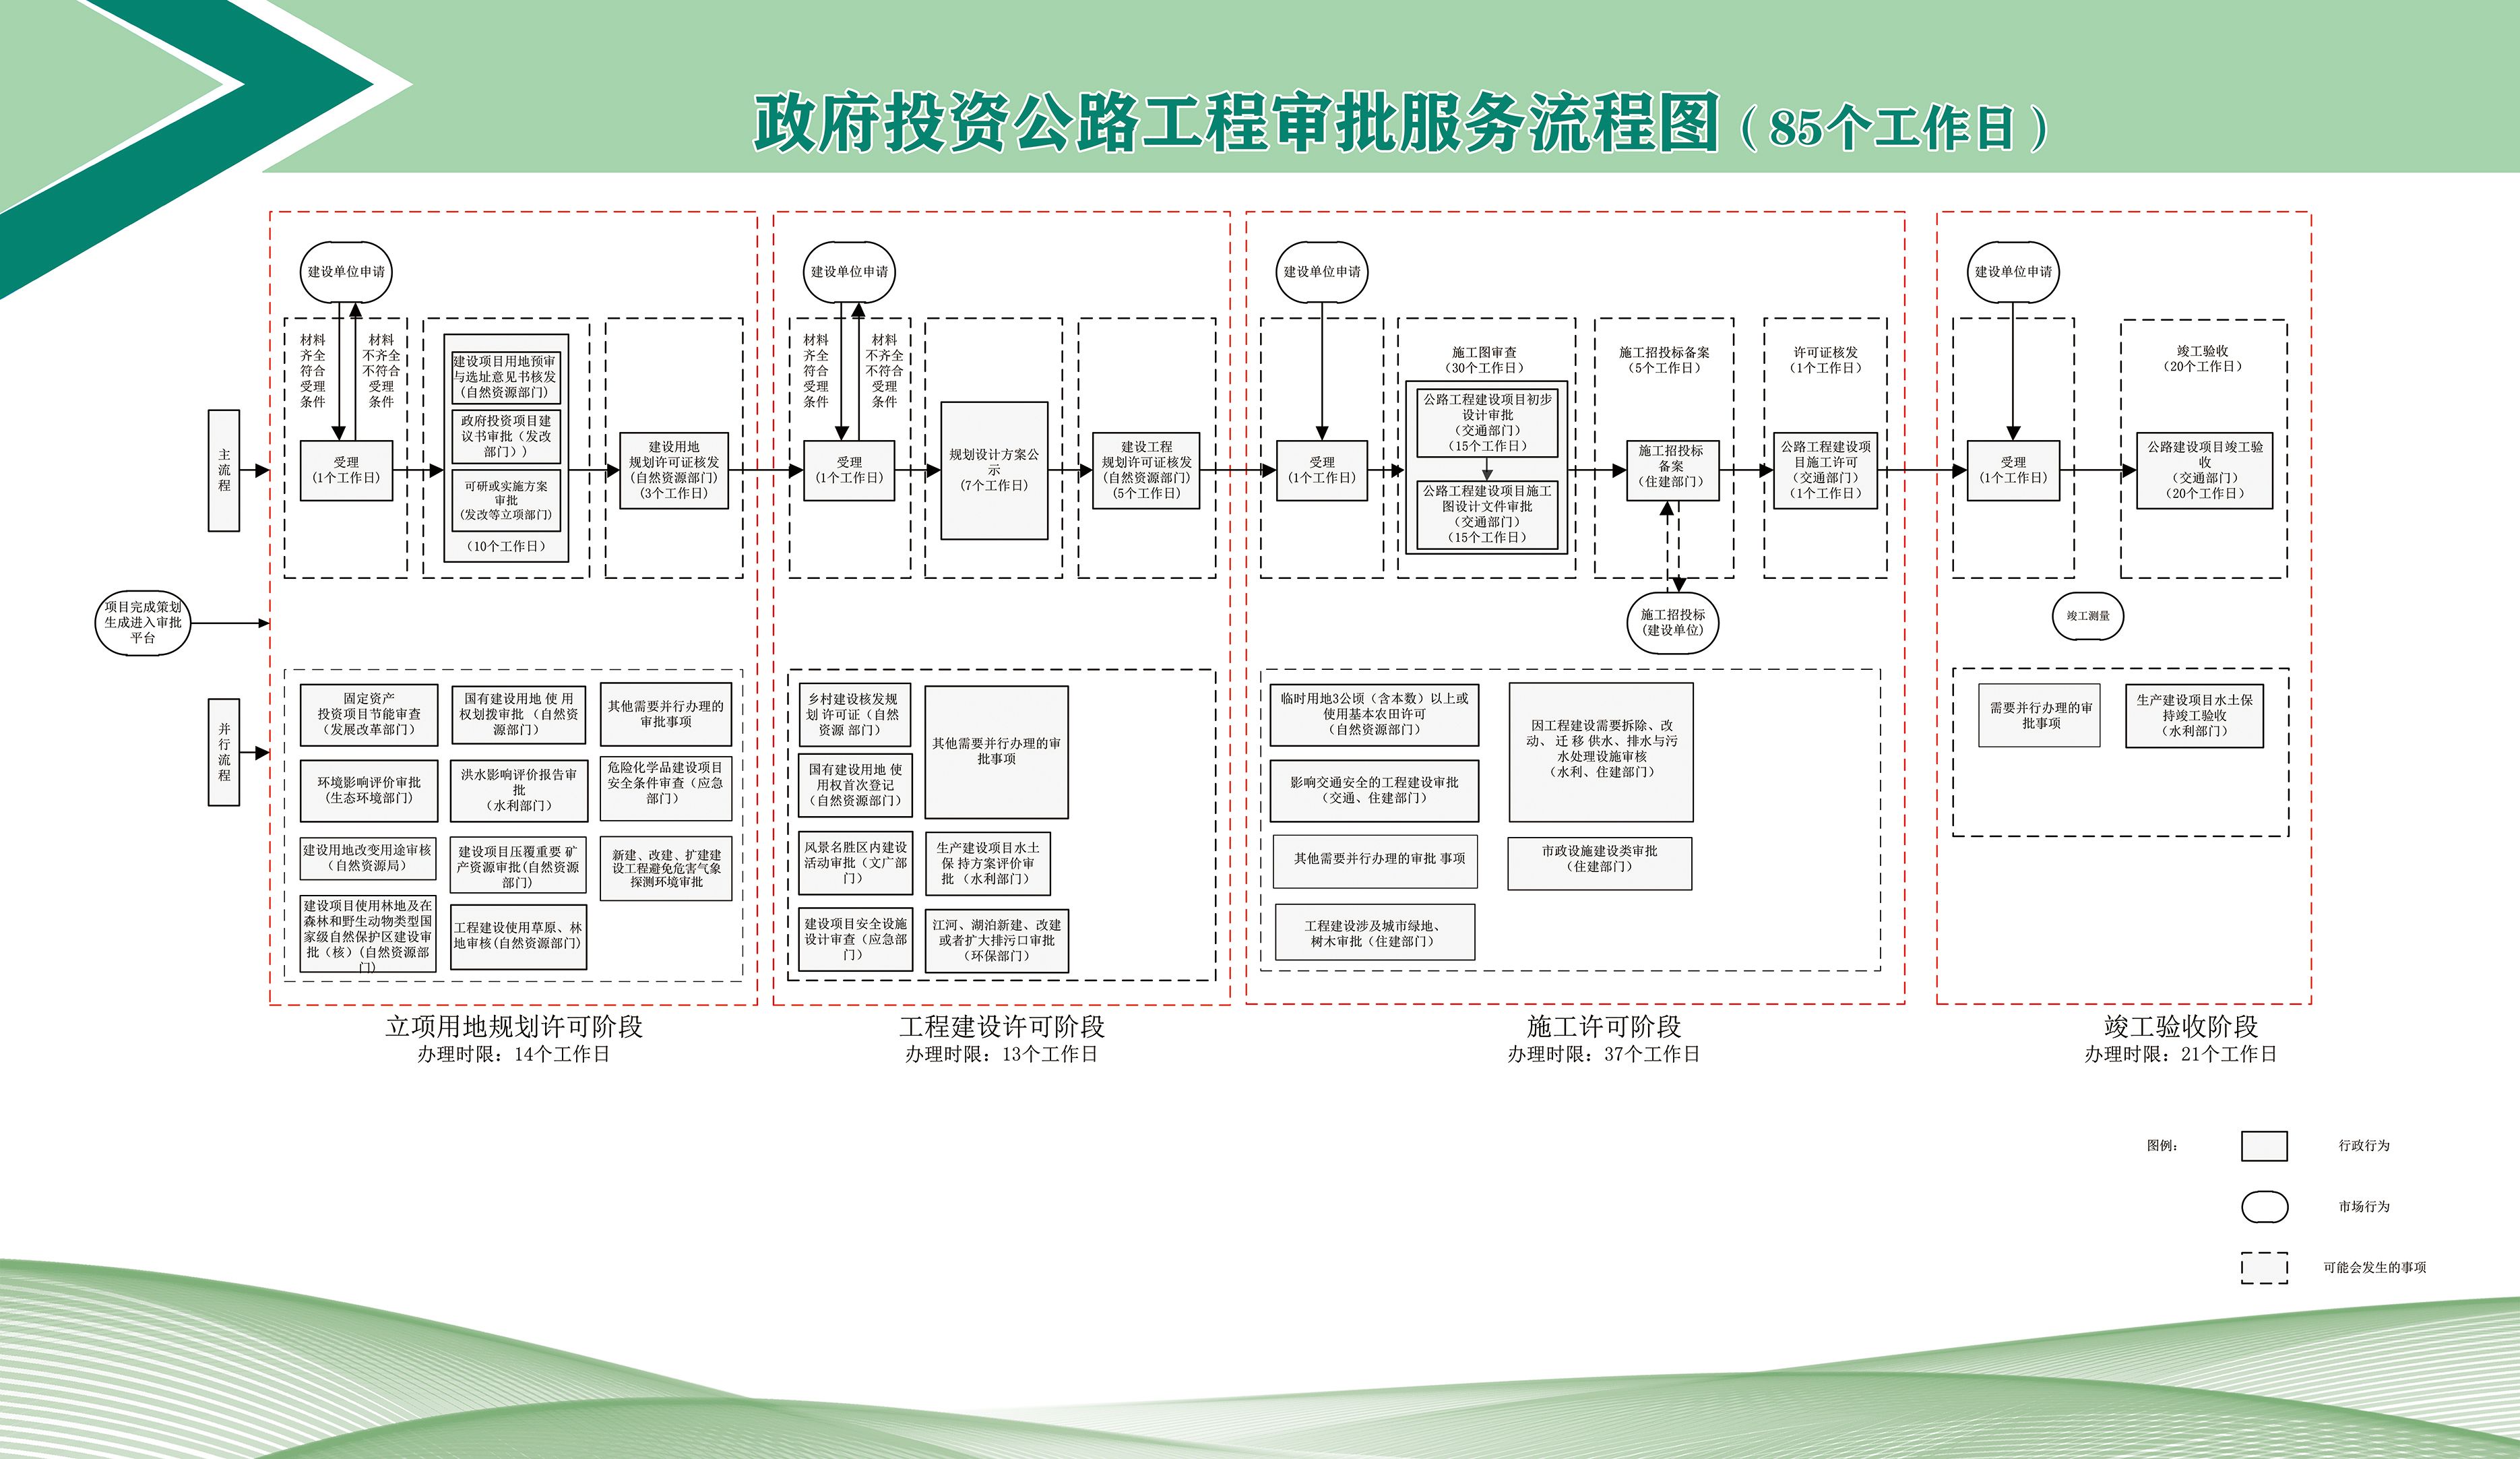 7-政府投资公路工程审批服务流程图